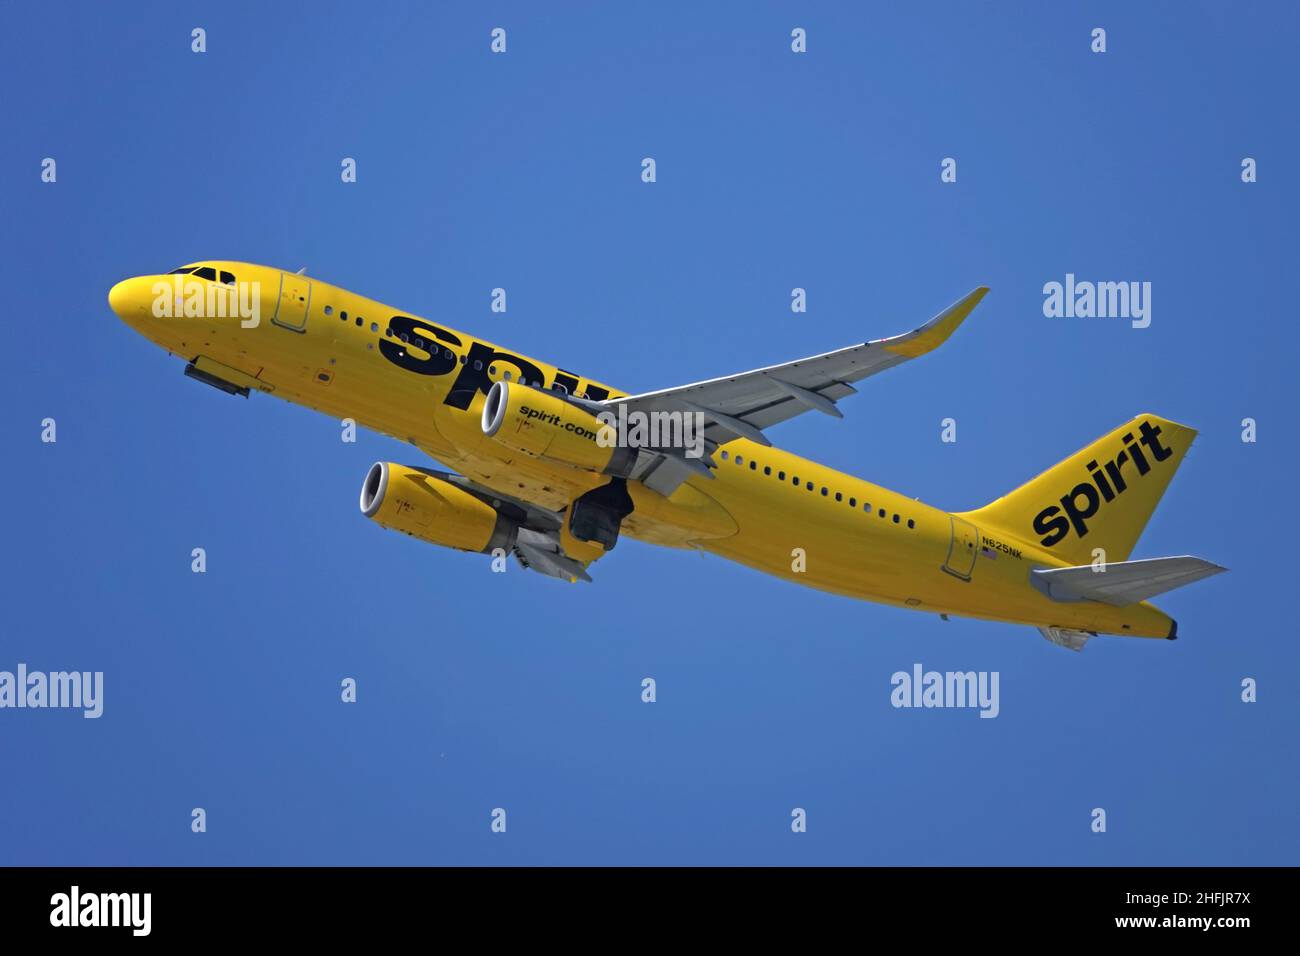 11 agosto 2019 - Los Angeles, CA / USA: Un Airbus A320-232, gestito da Spirit Airlines, è mostrato decollo da LAX durante il giorno. Foto Stock